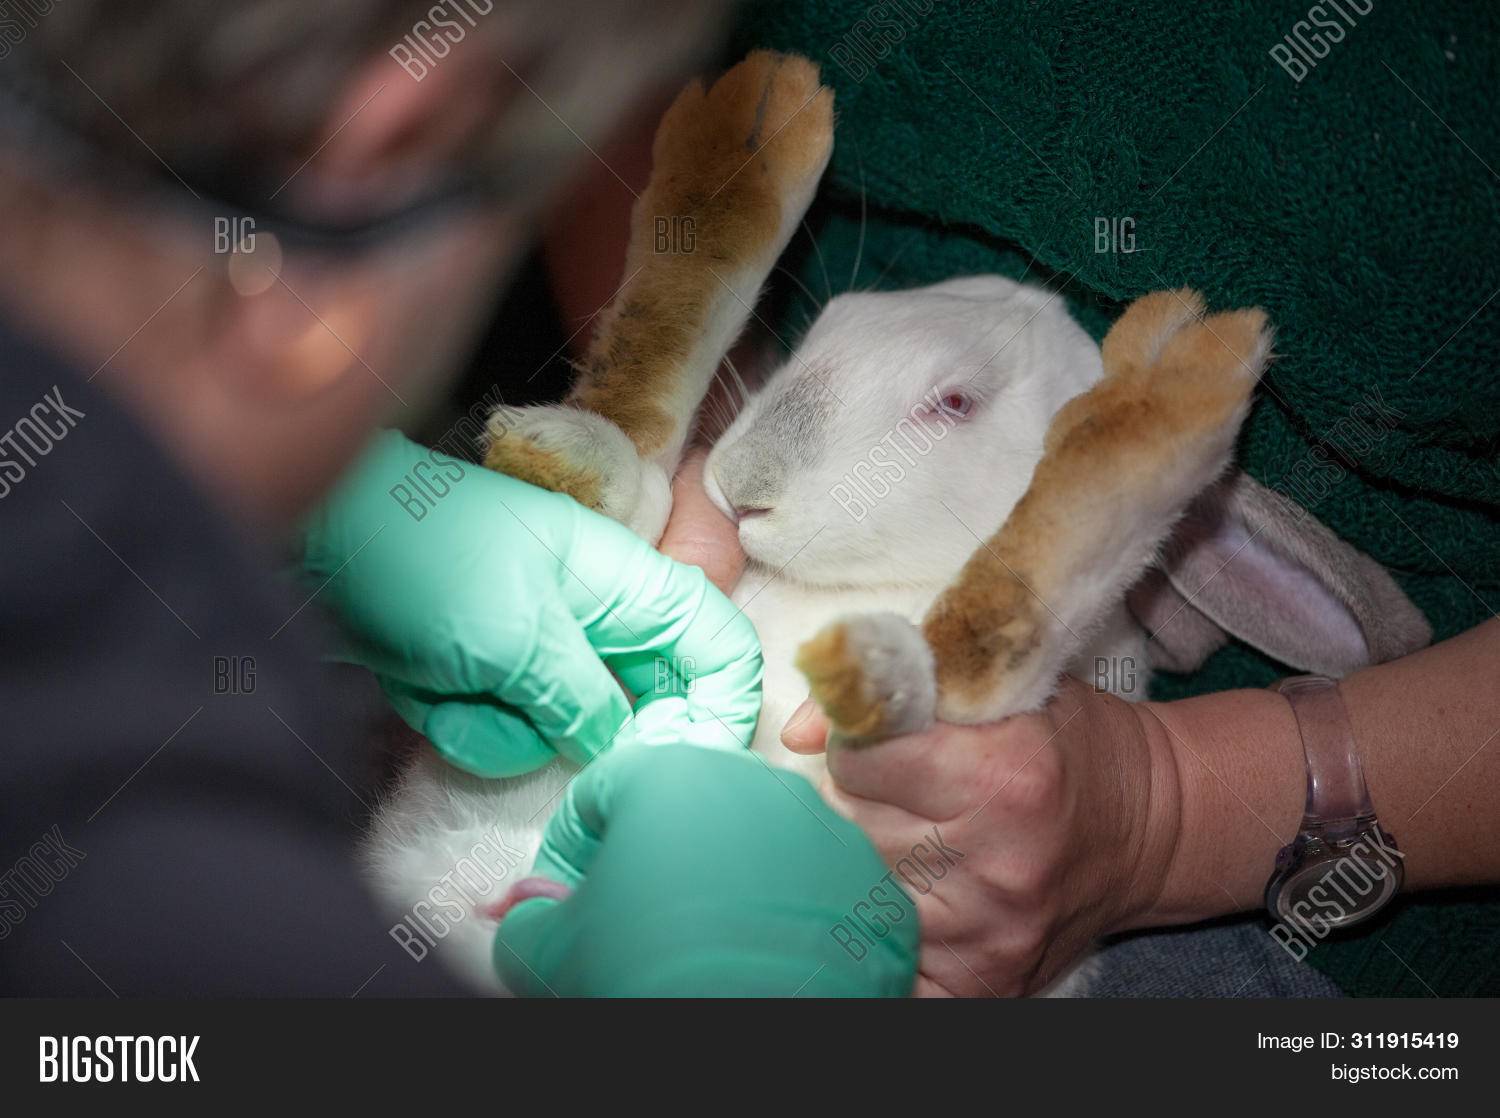 Кастрация кролика - когда необходима, подходящий возраст, уход после операции